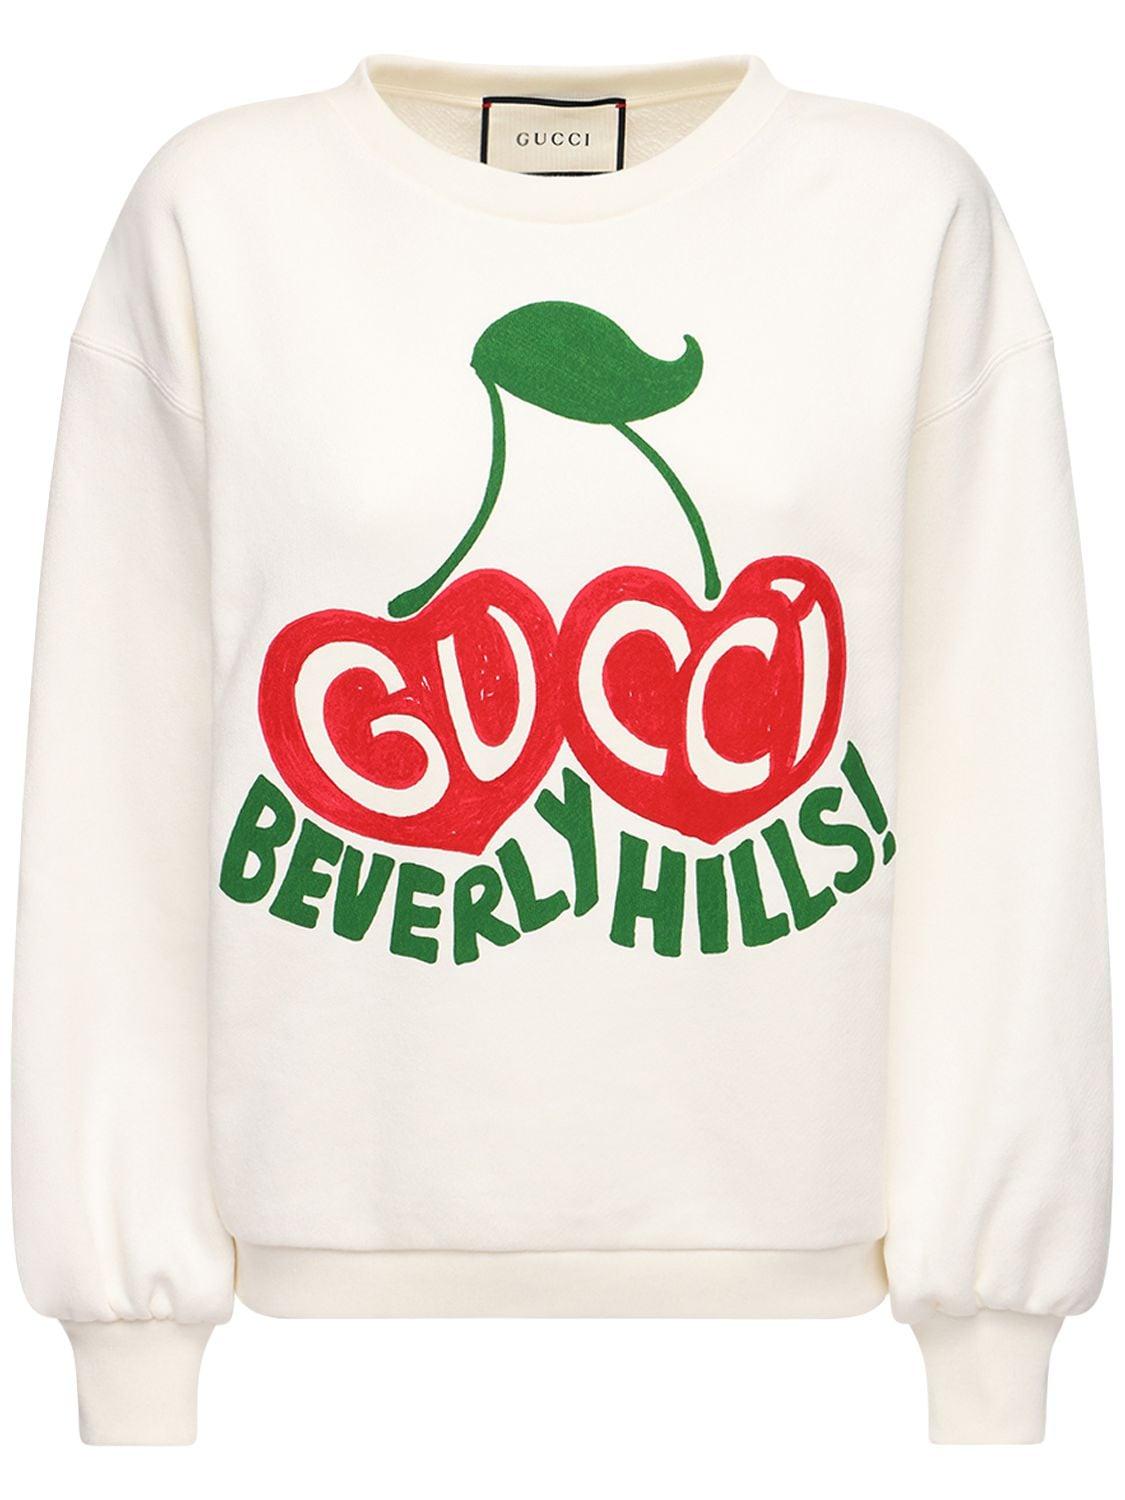 geef de bloem water kwaliteit bezoek Gucci "beverly Hills" Cherry Print Sweatshirt in White | Lyst